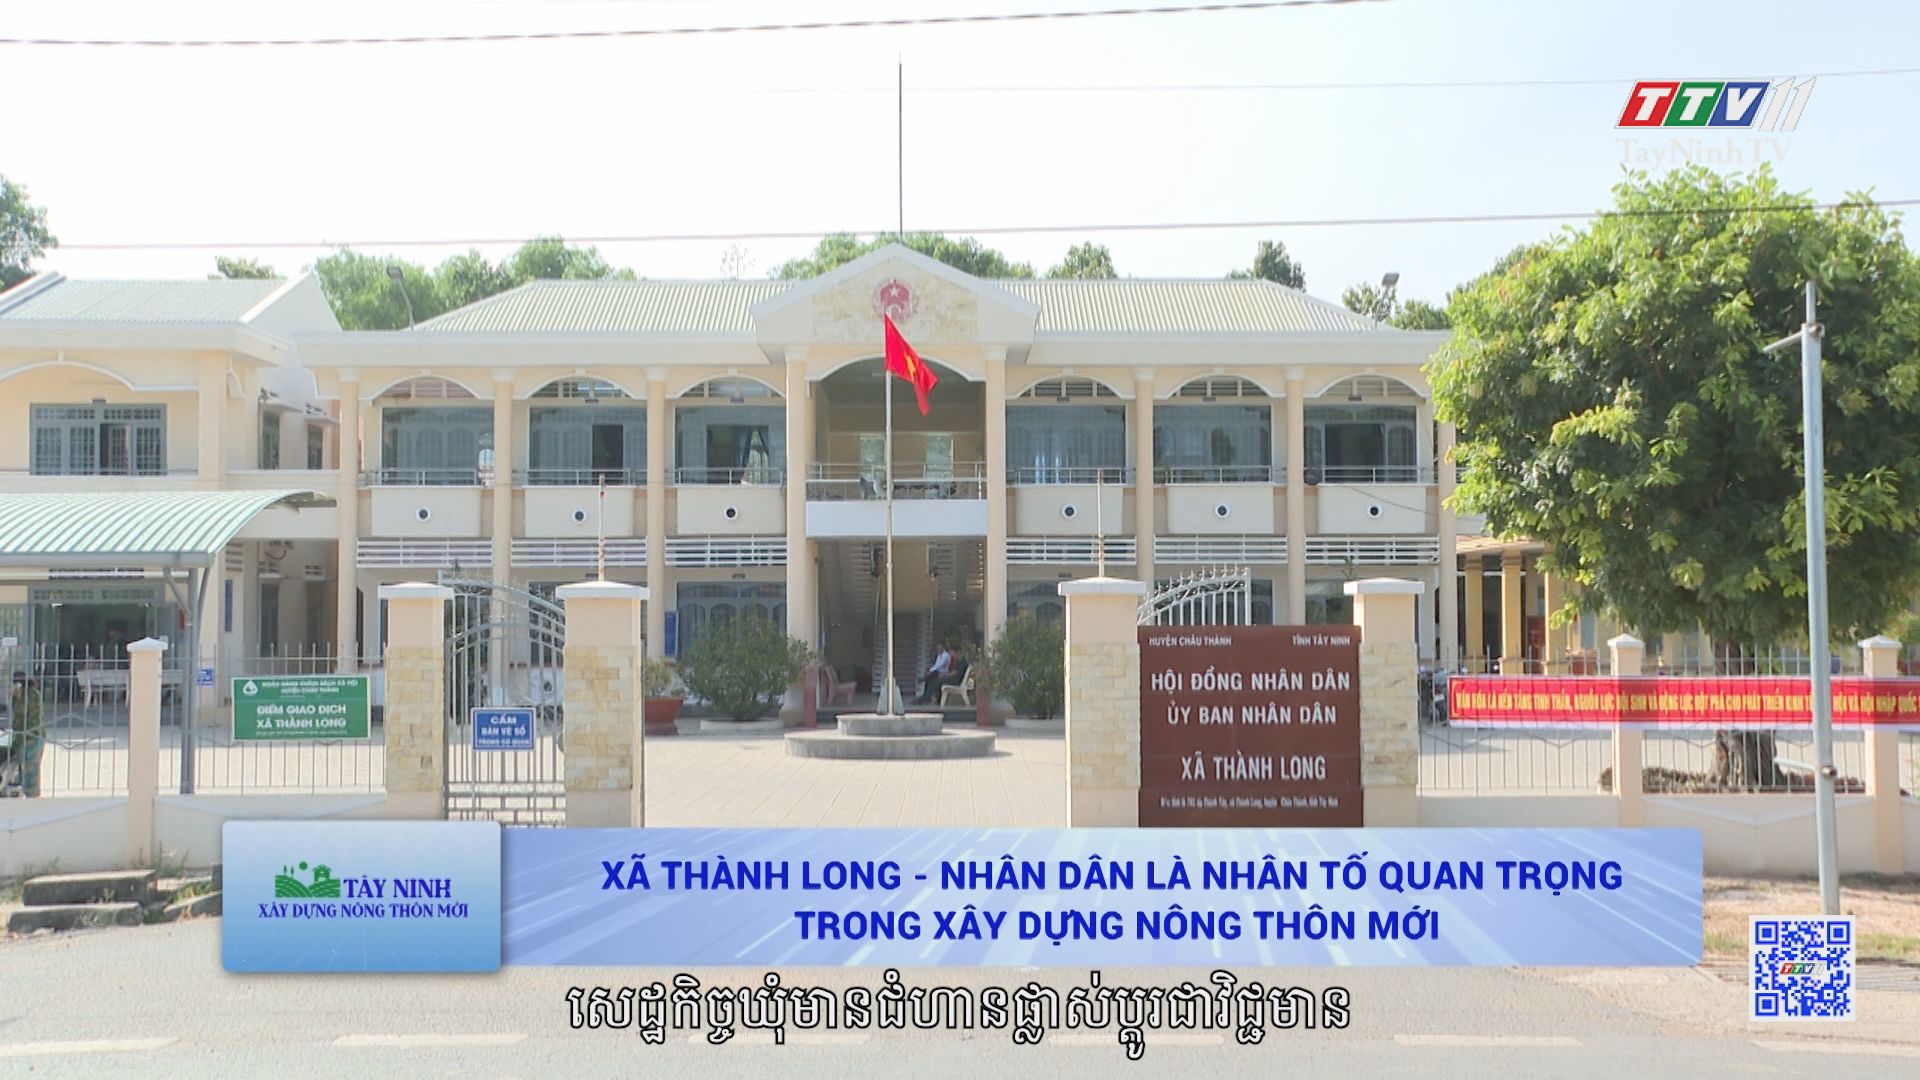 Xã Thành Long - Nhân dân là nhân tố quan trọng trong xây dựng nông thôn mới | TÂY NINH XÂY DỰNG NÔNG THÔN MỚI | TayNinhTV